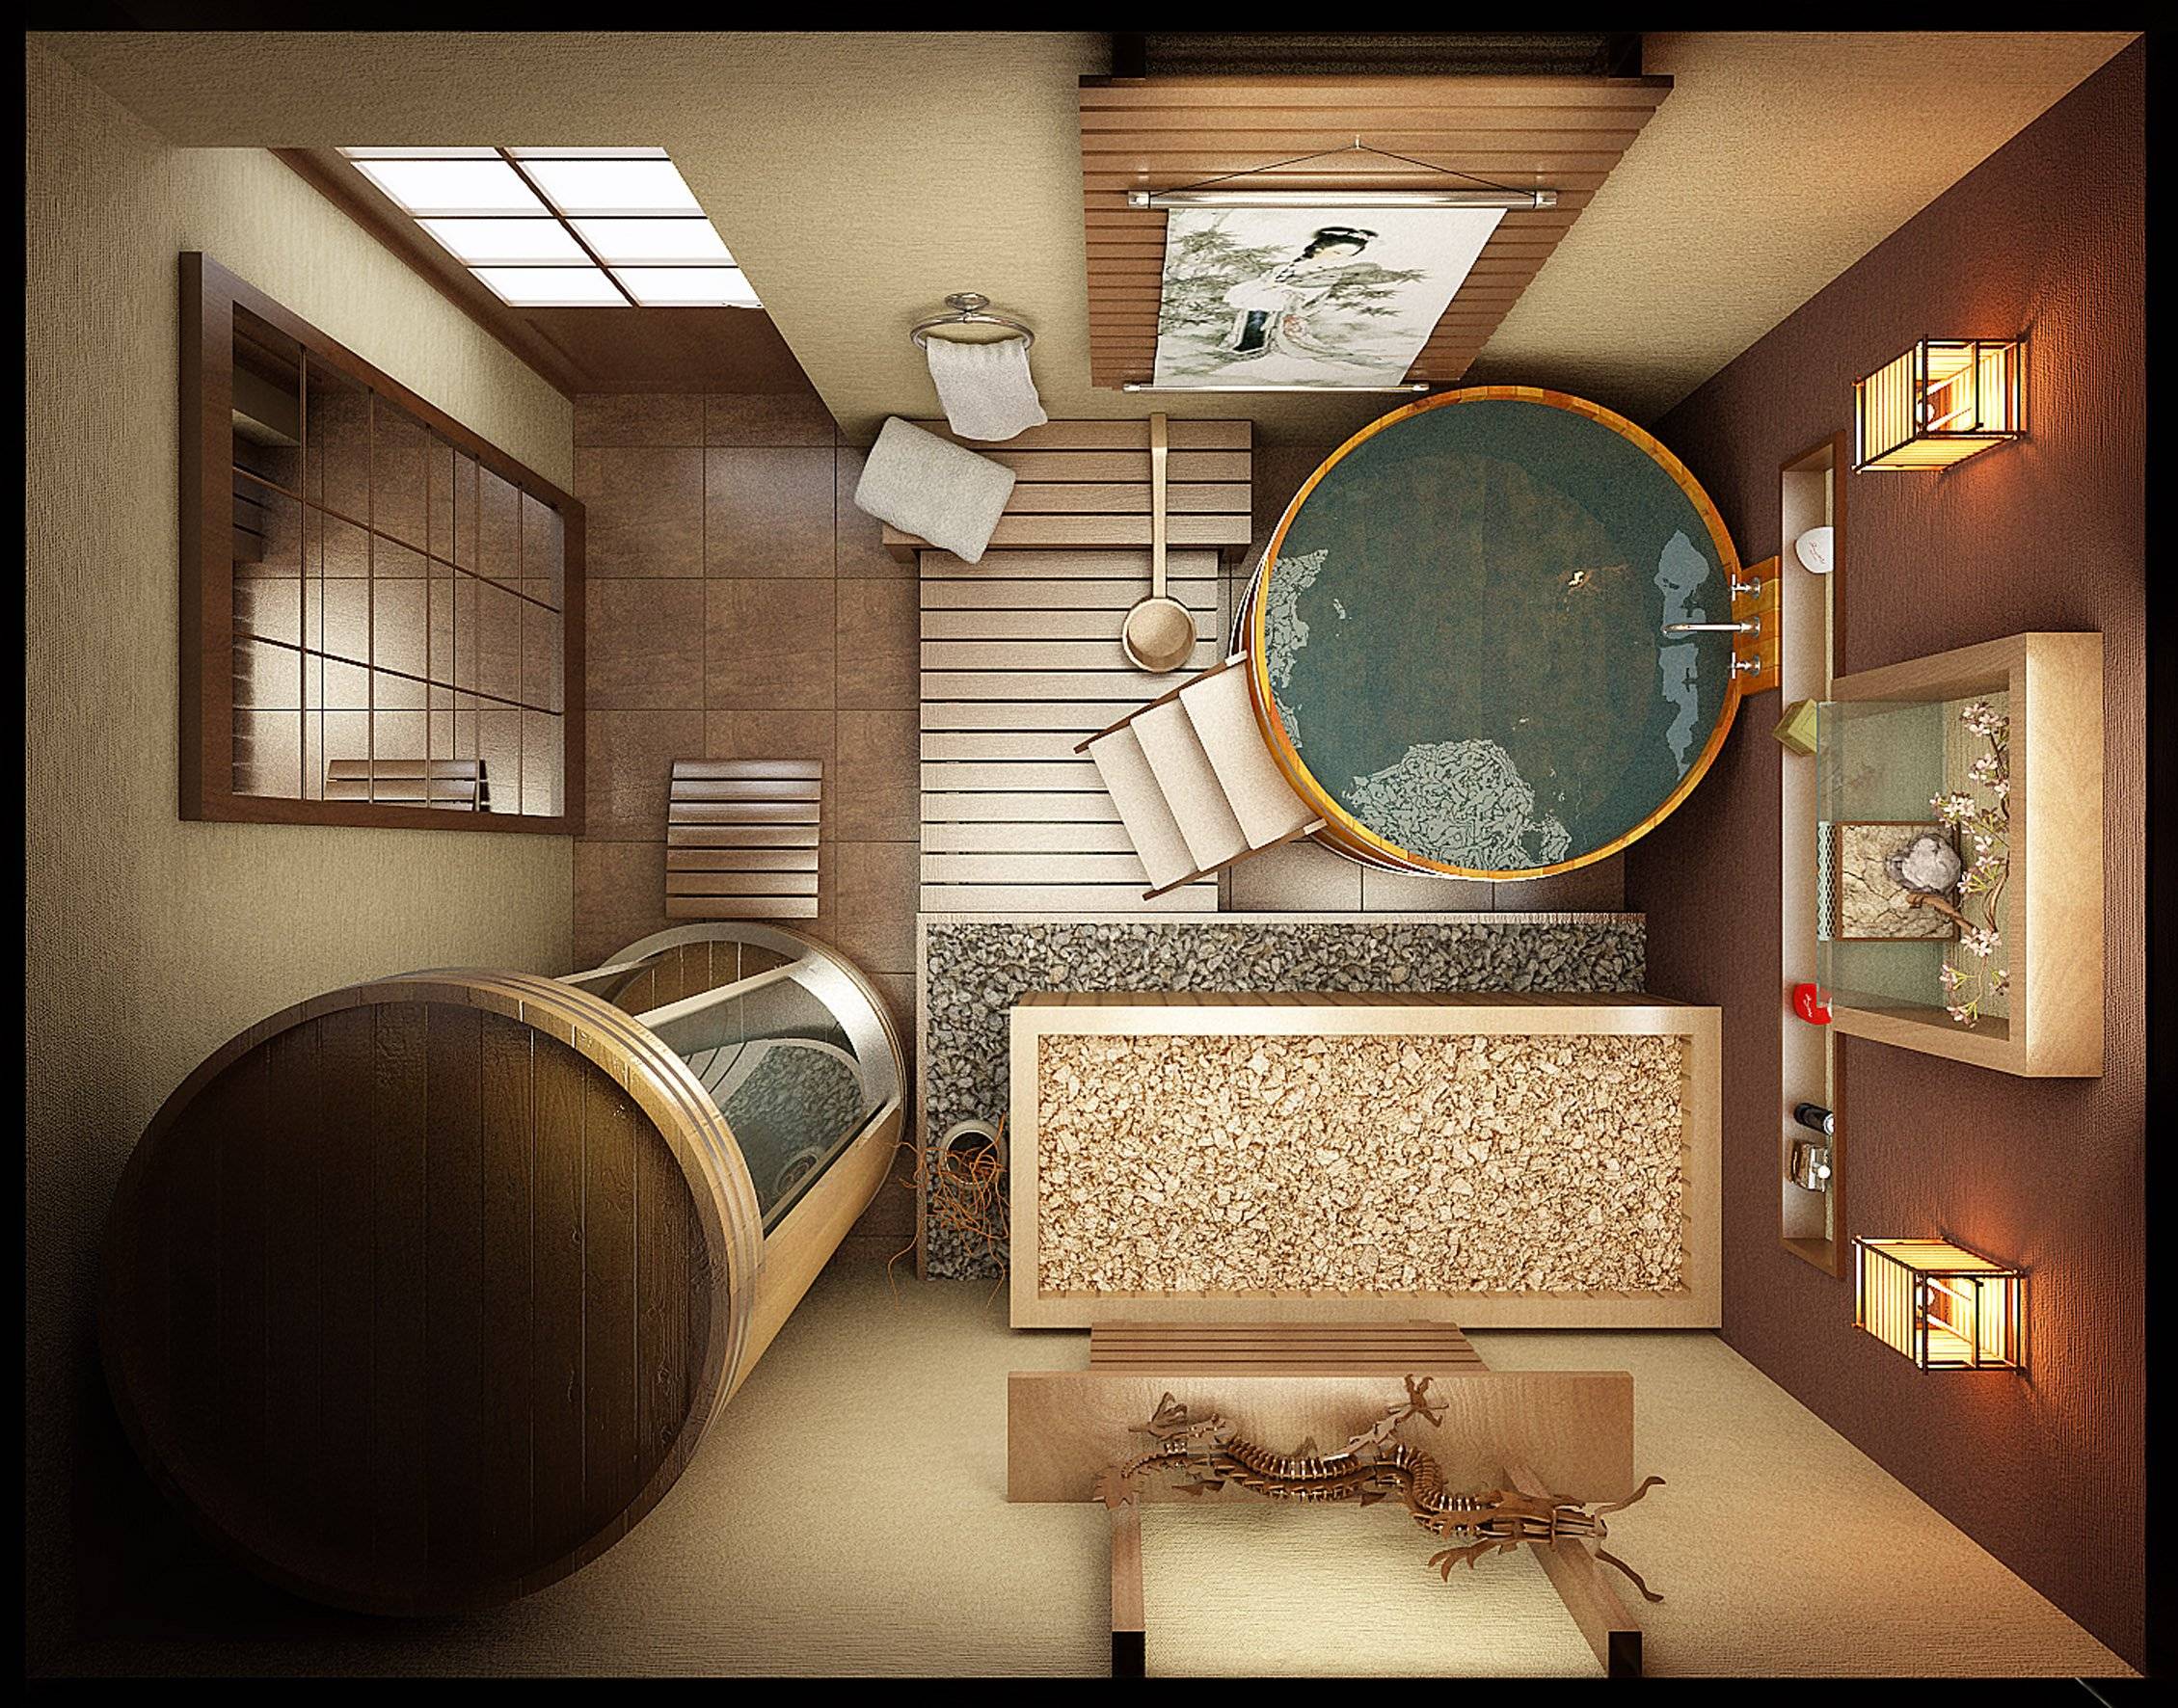 Ванна японская: стиль комнаты и виды ванн, фураке, офуро и деревянная, фото